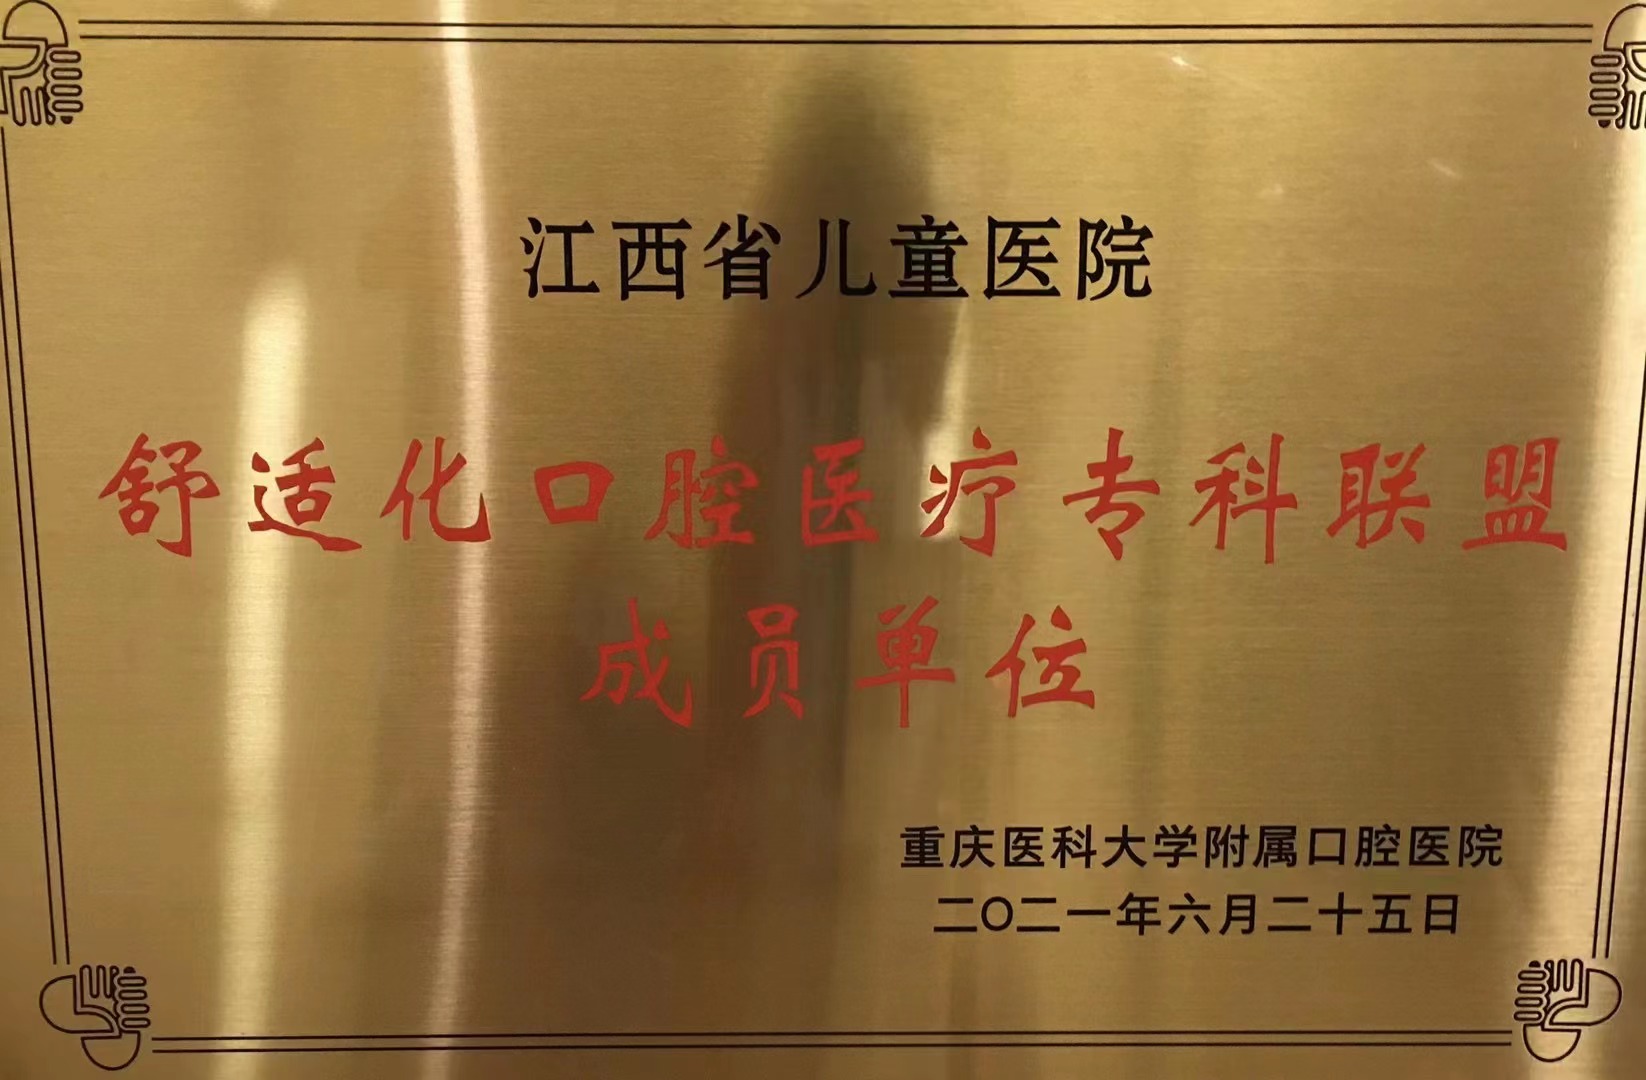 江西省儿童医院logo图片